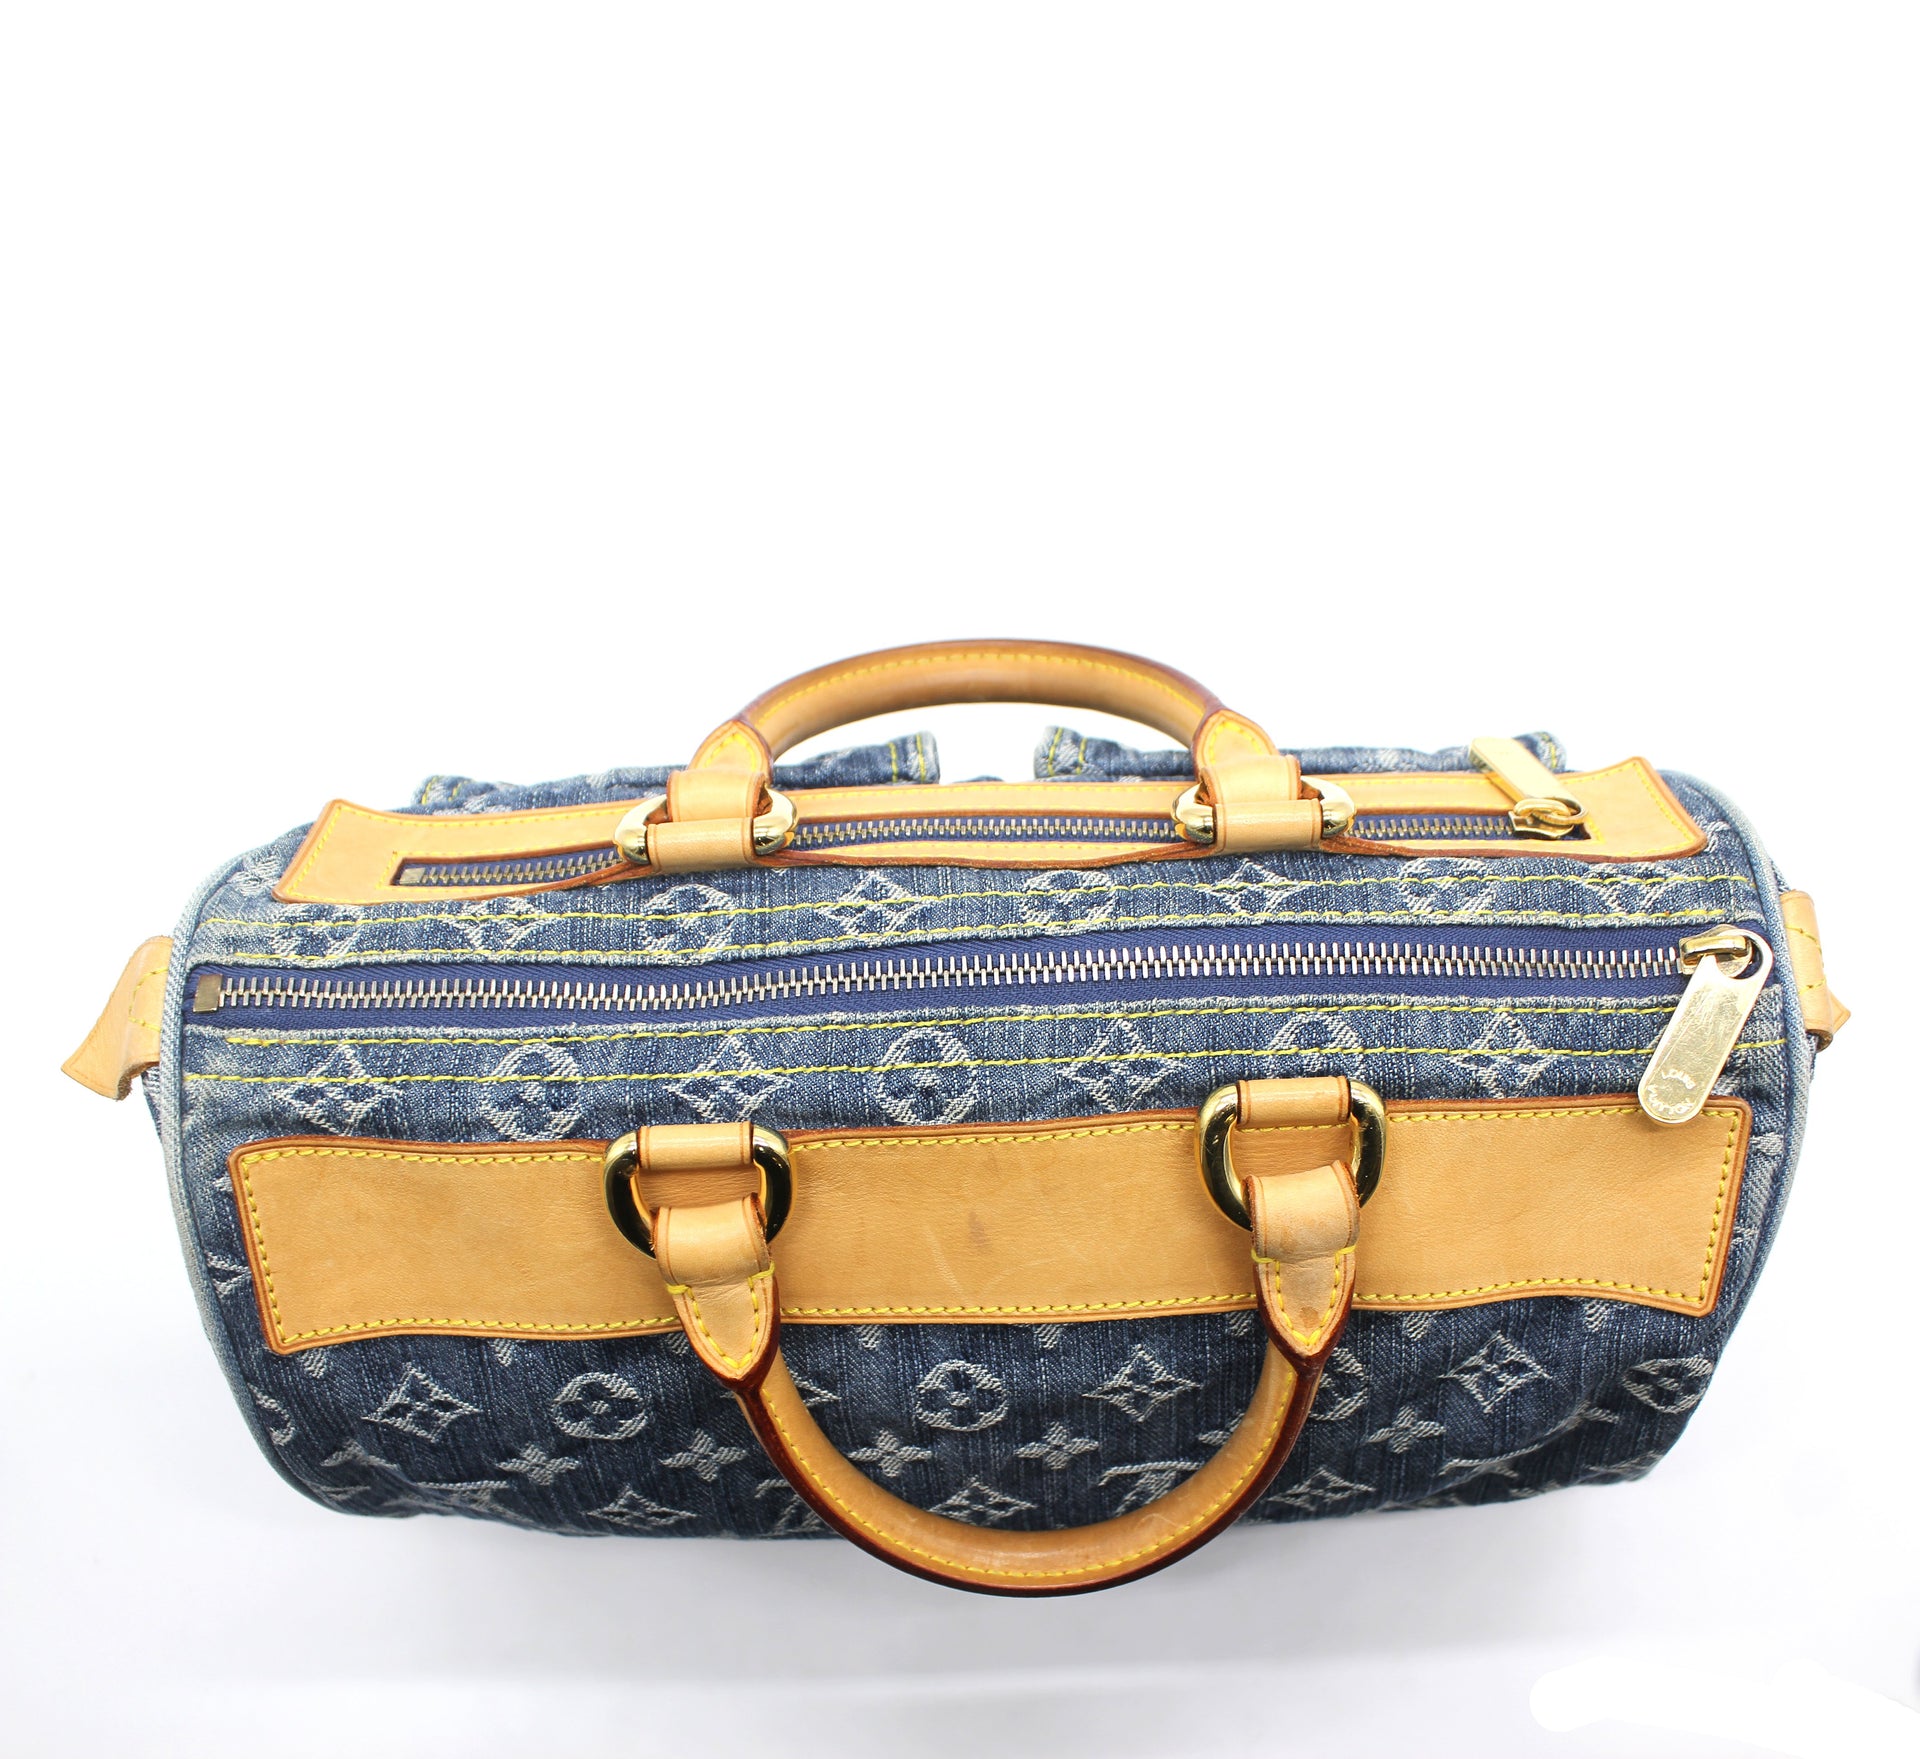 Louis Vuitton Denim Neo Speedy Bag